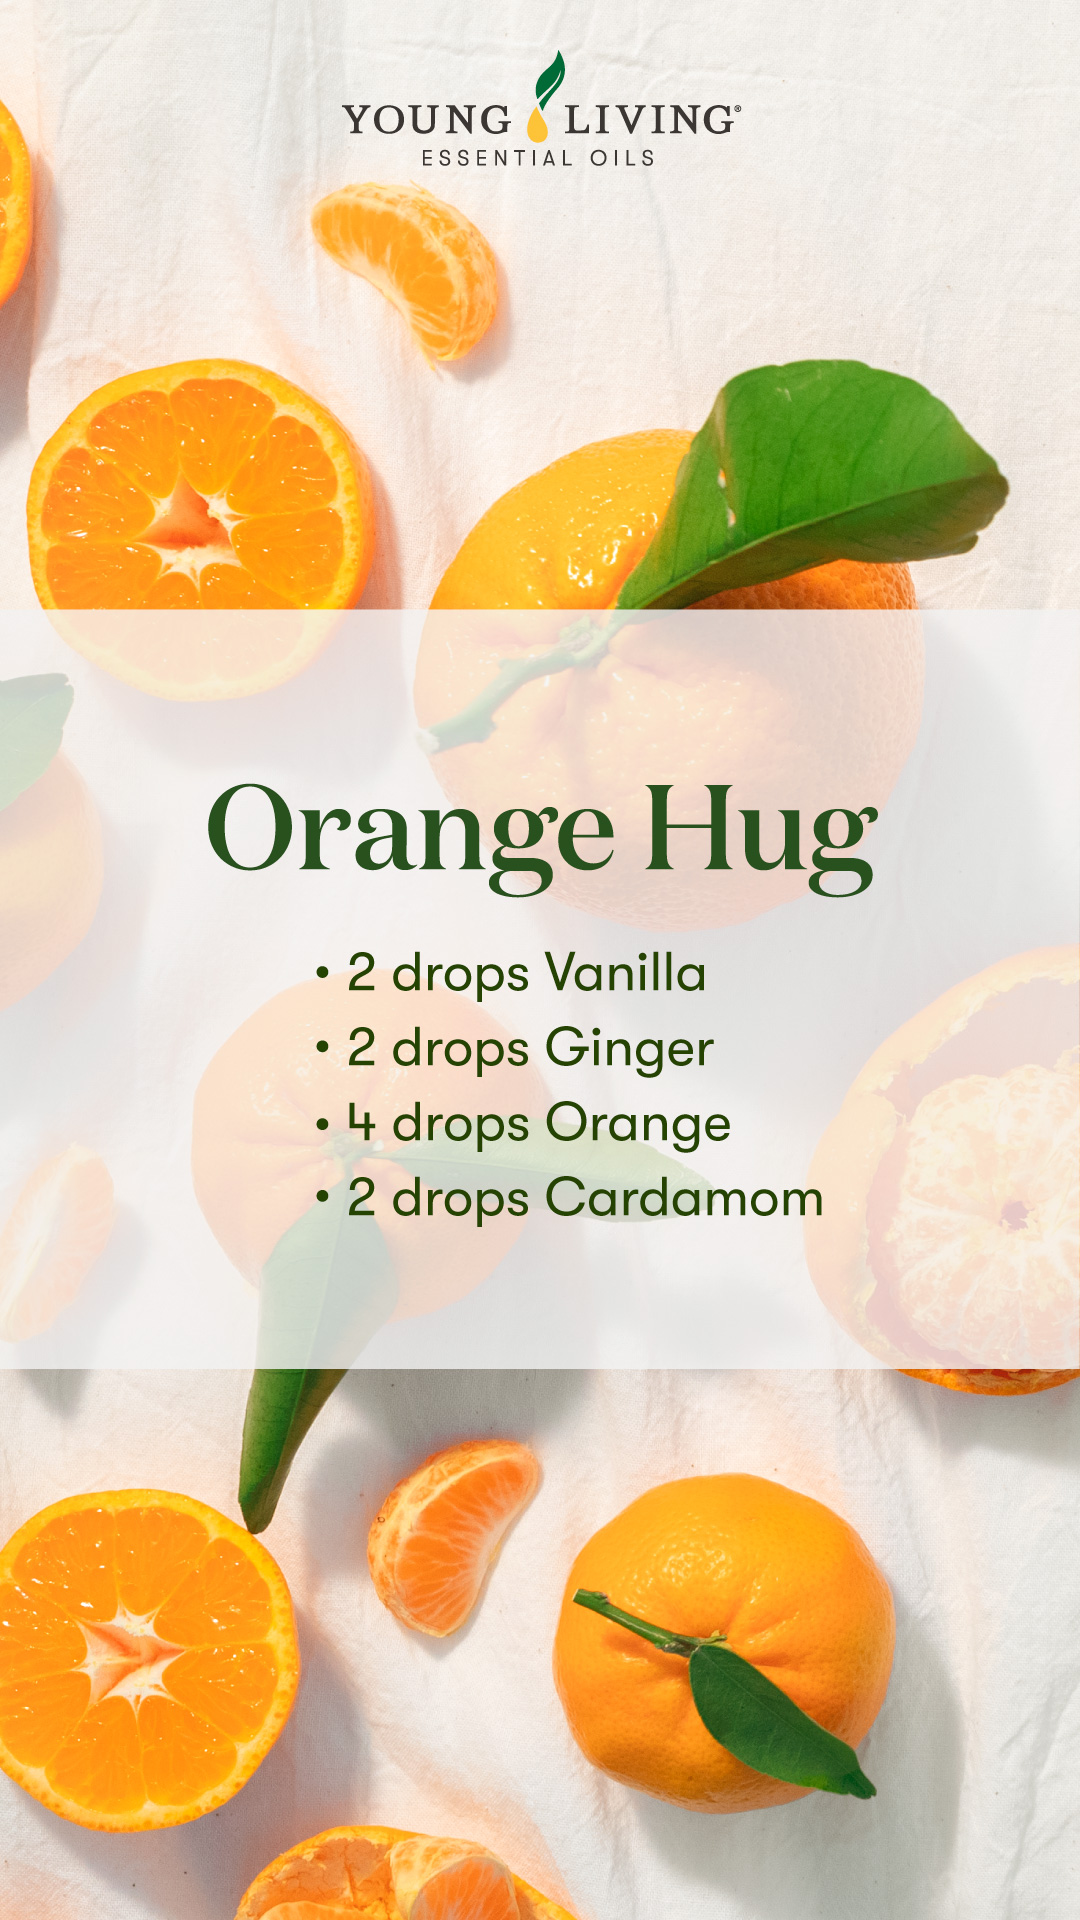 Orange Hug diffuser blend 